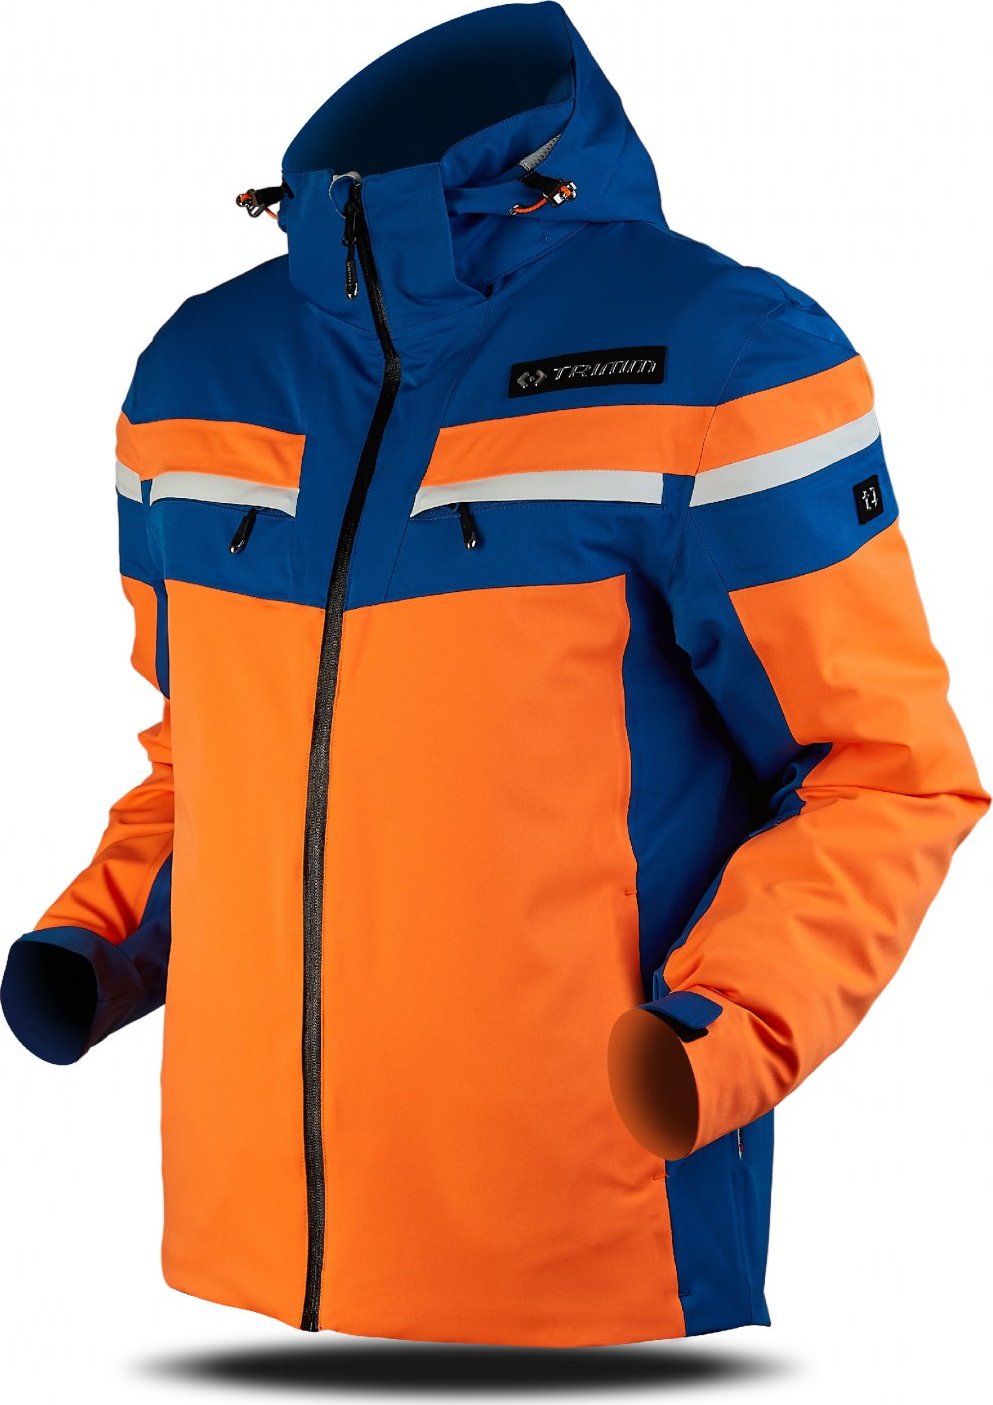 Pánská lyžařská bunda TRIMM Fusion oranžová Velikost: XXL, Barva: signal orange/navy/white